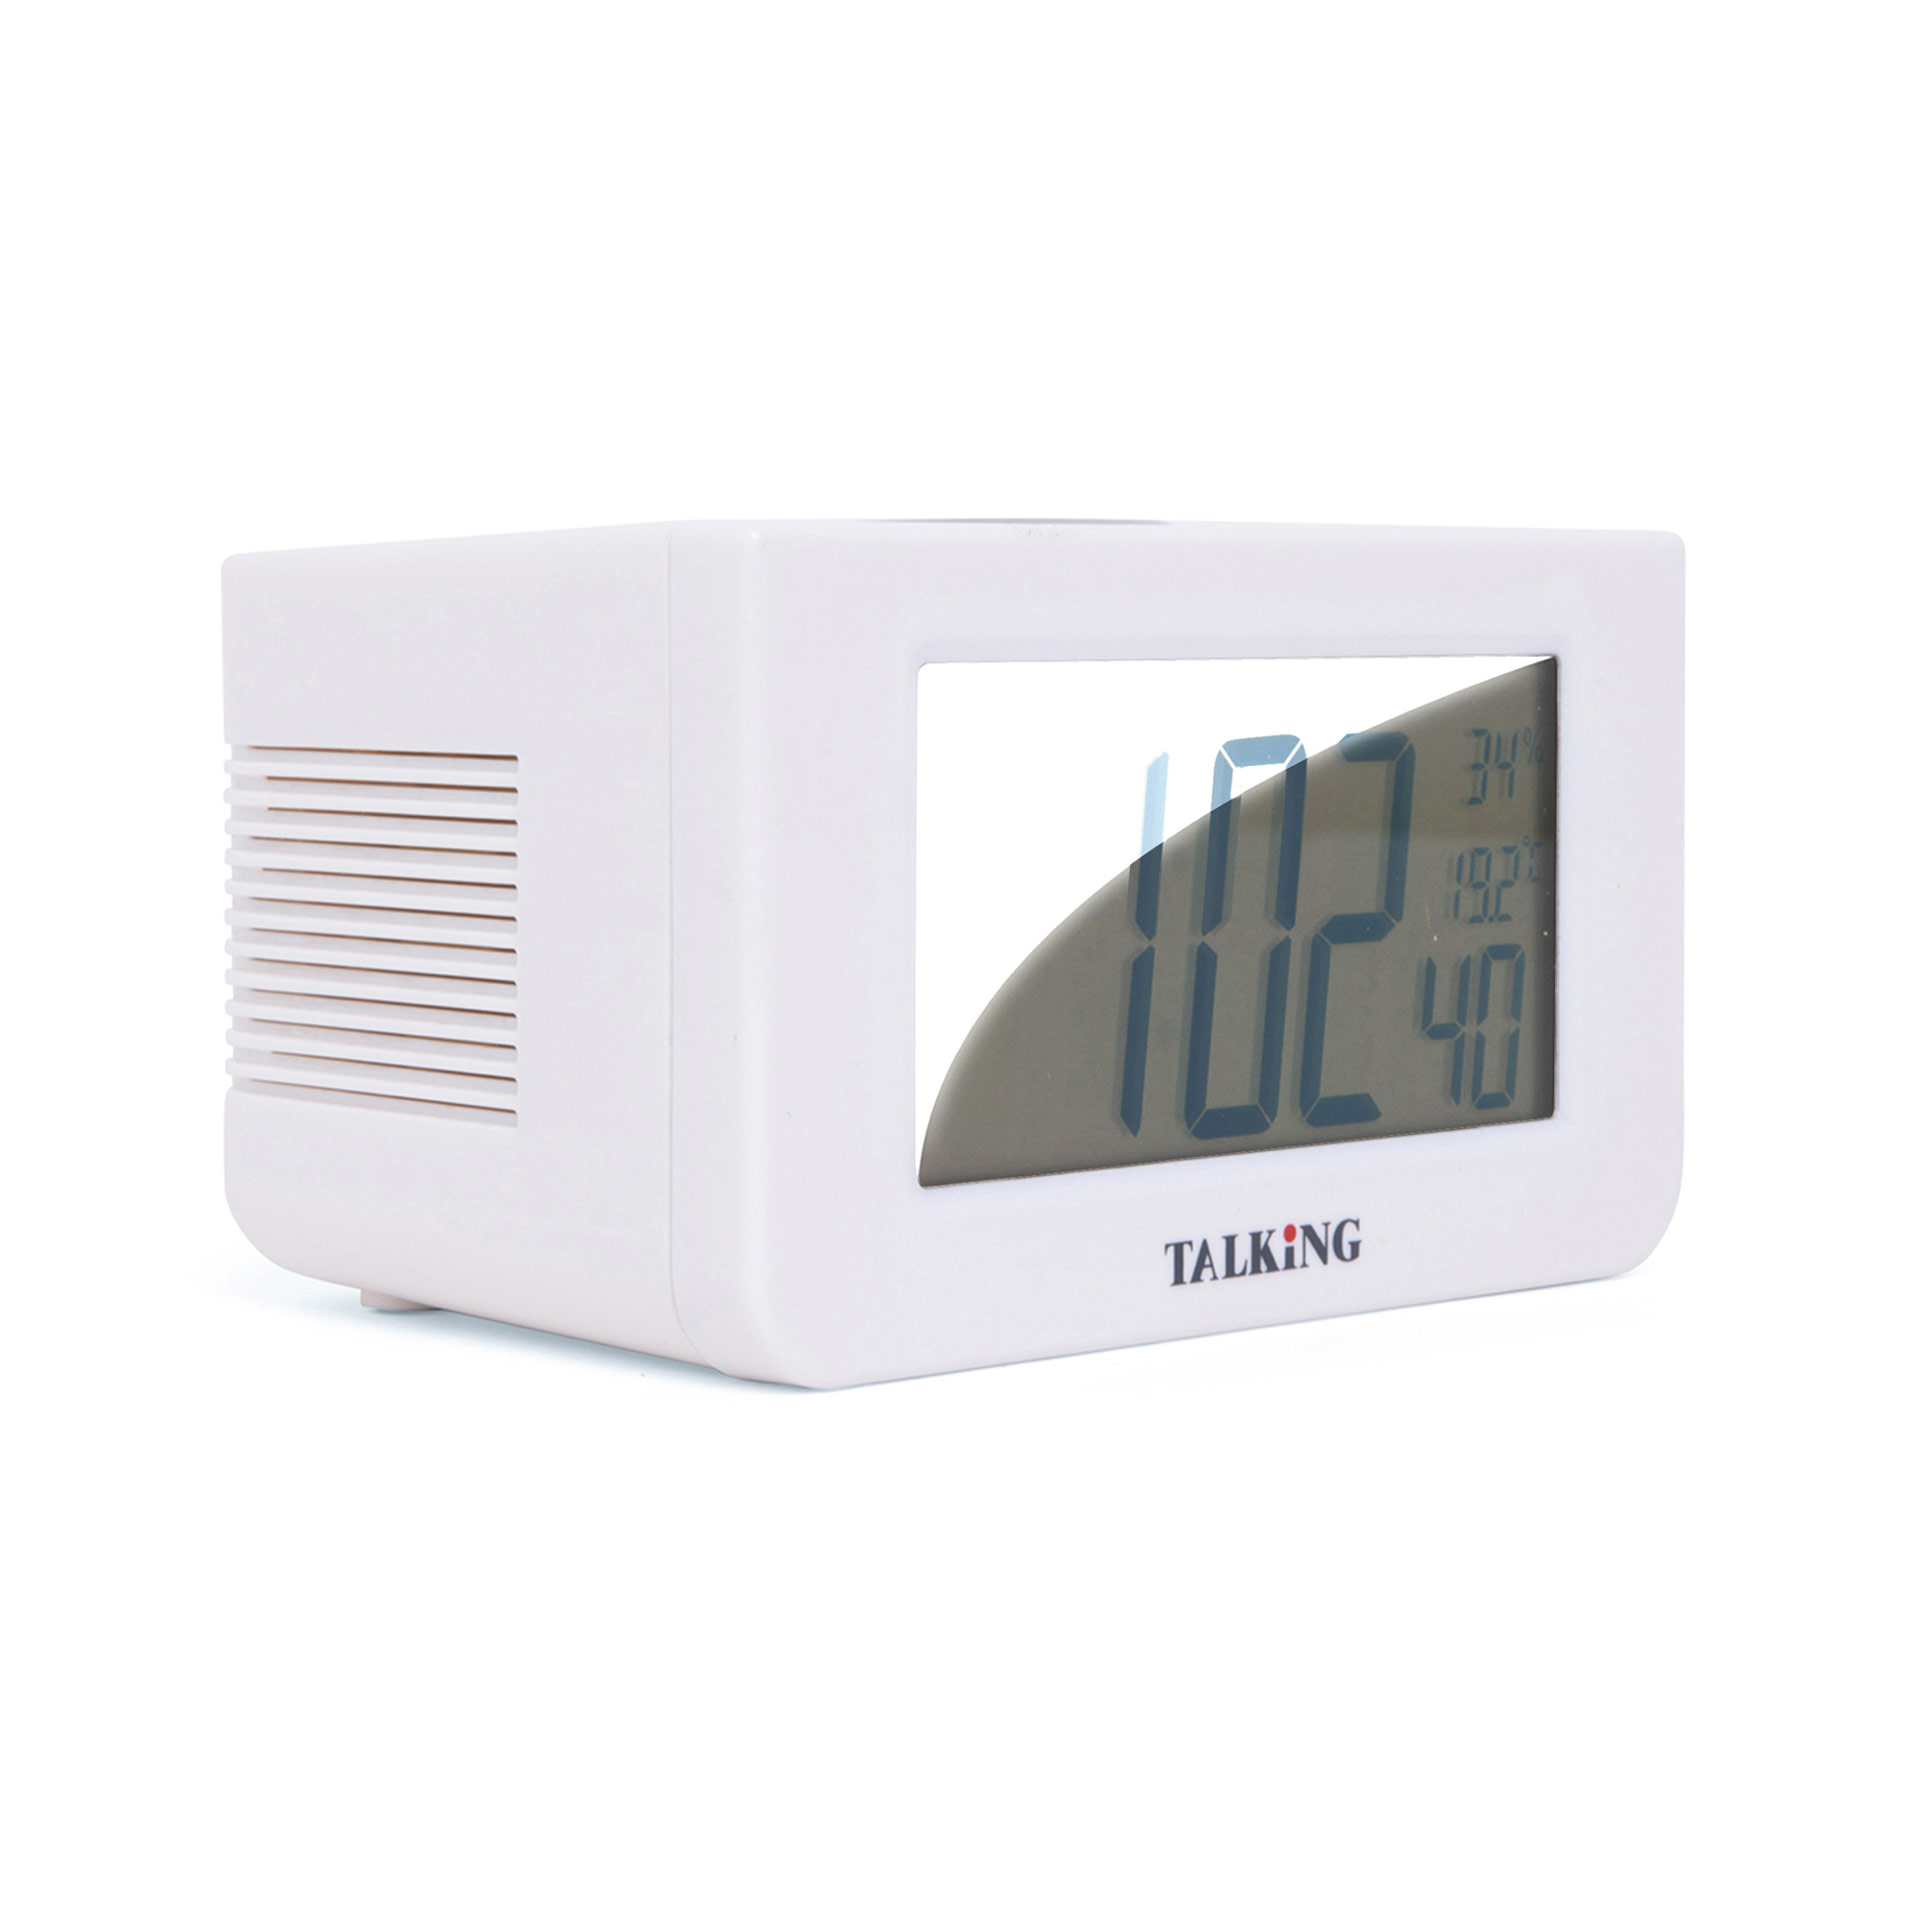 Radio sveglia con display LCD e segnale acustico personalizzabile DAC-438  voice - PEARL